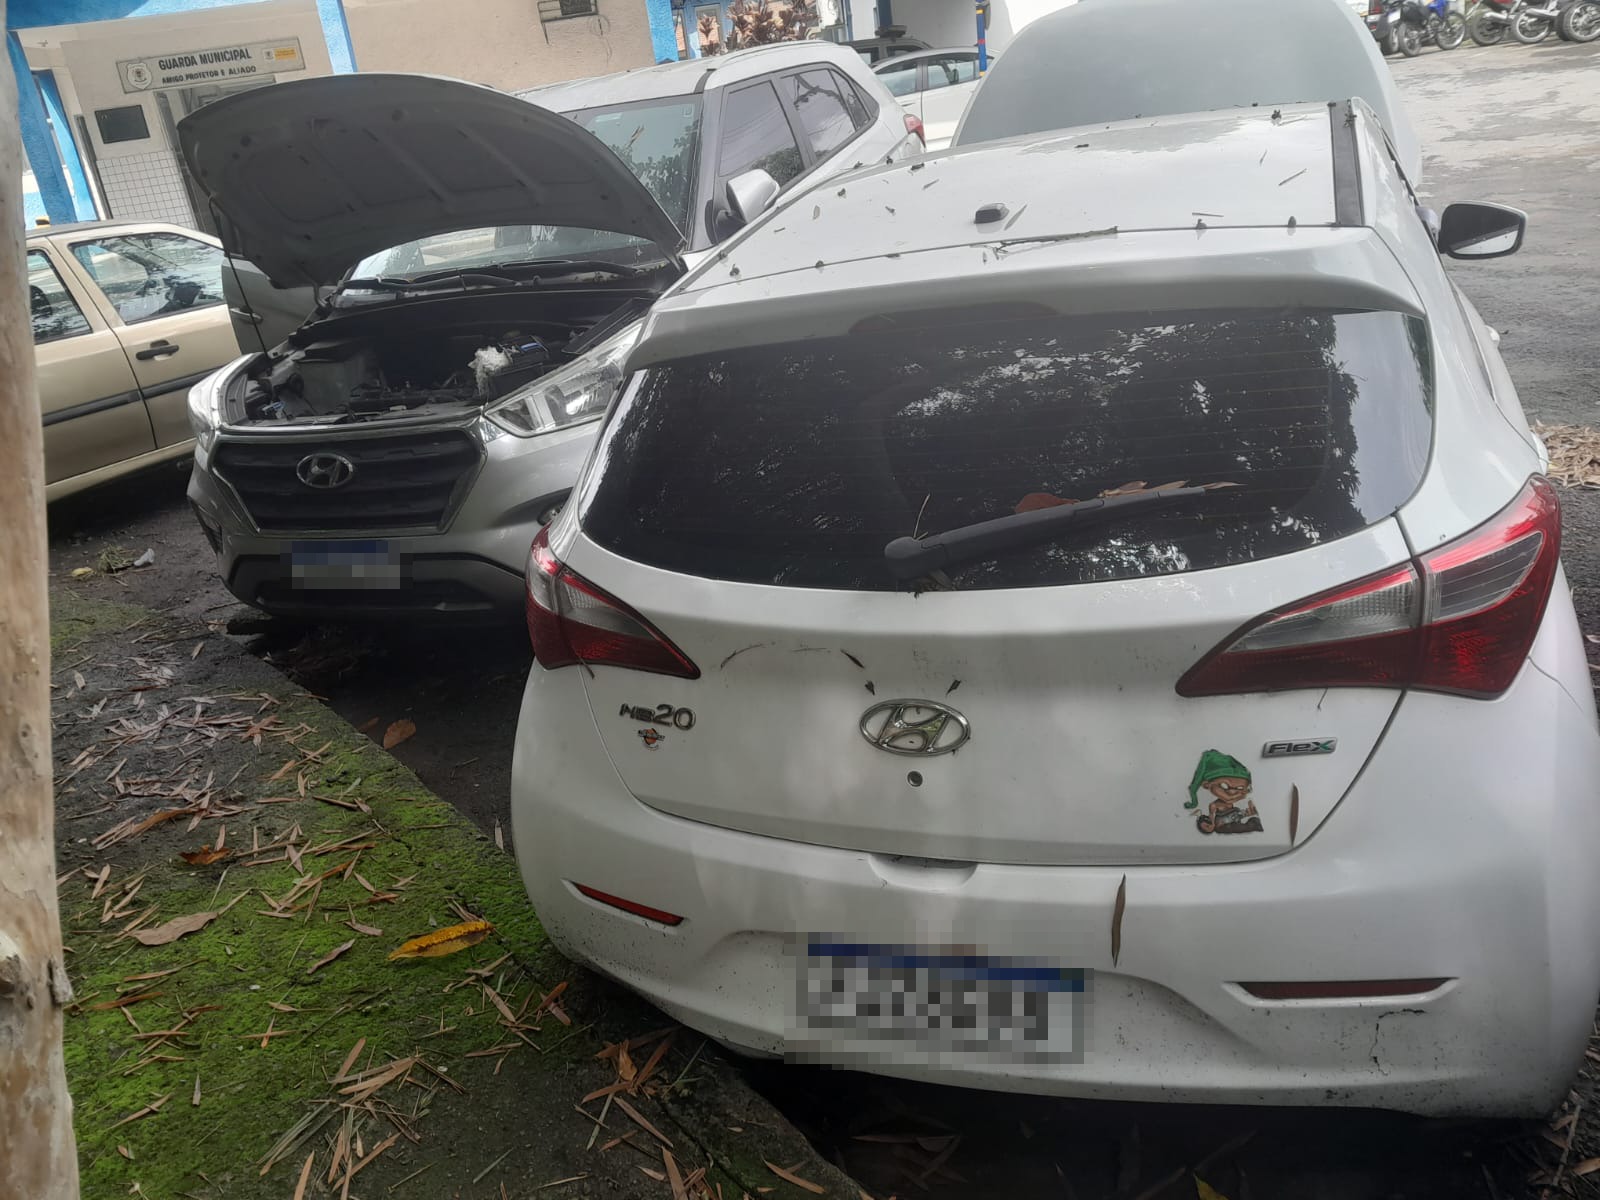 GMVR constata após perícia que carro envolvido em acidente em Volta Redonda é clonado